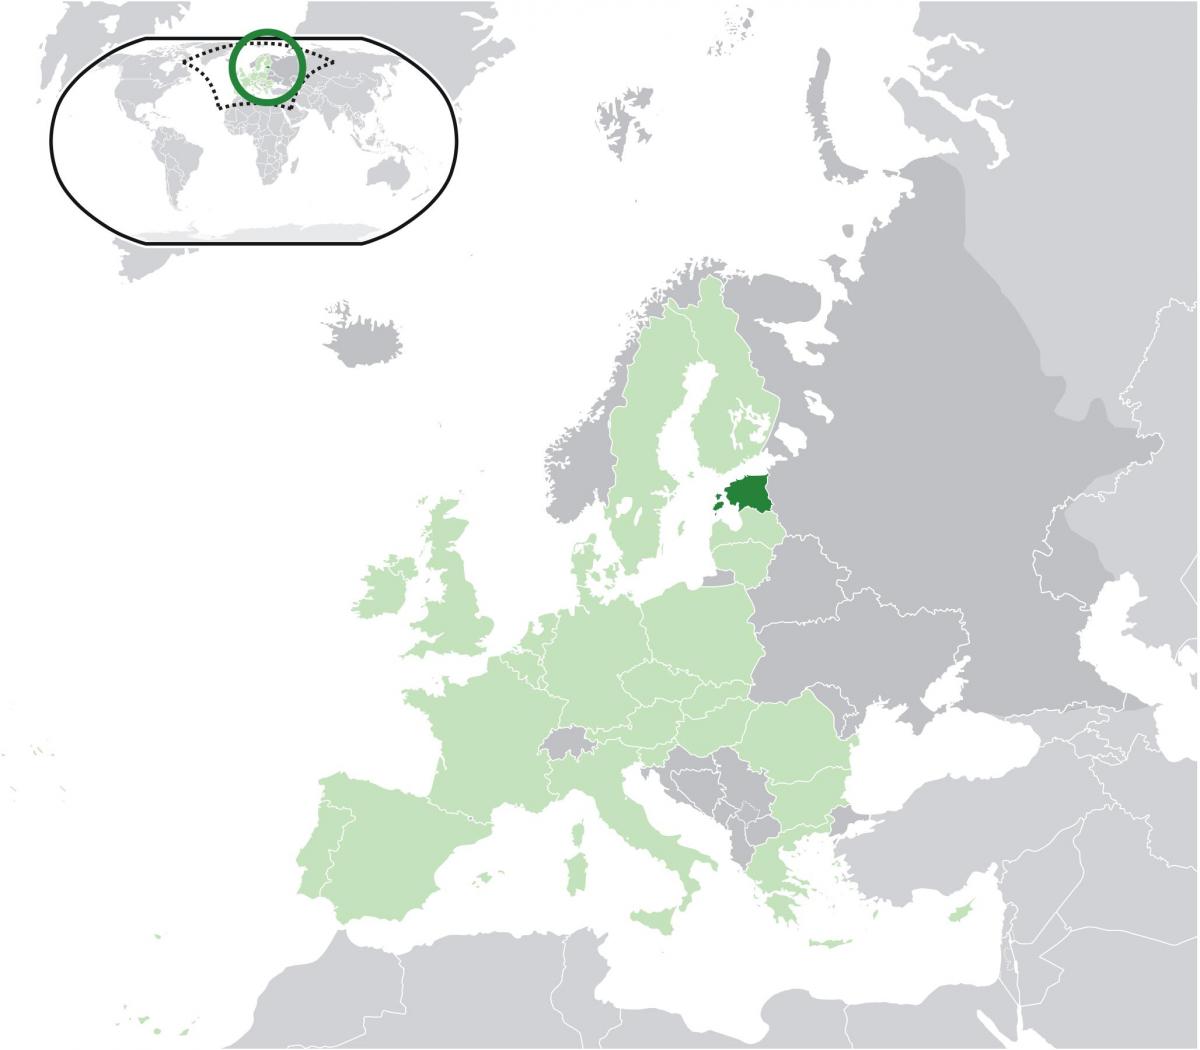 استونی در نقشه اروپا